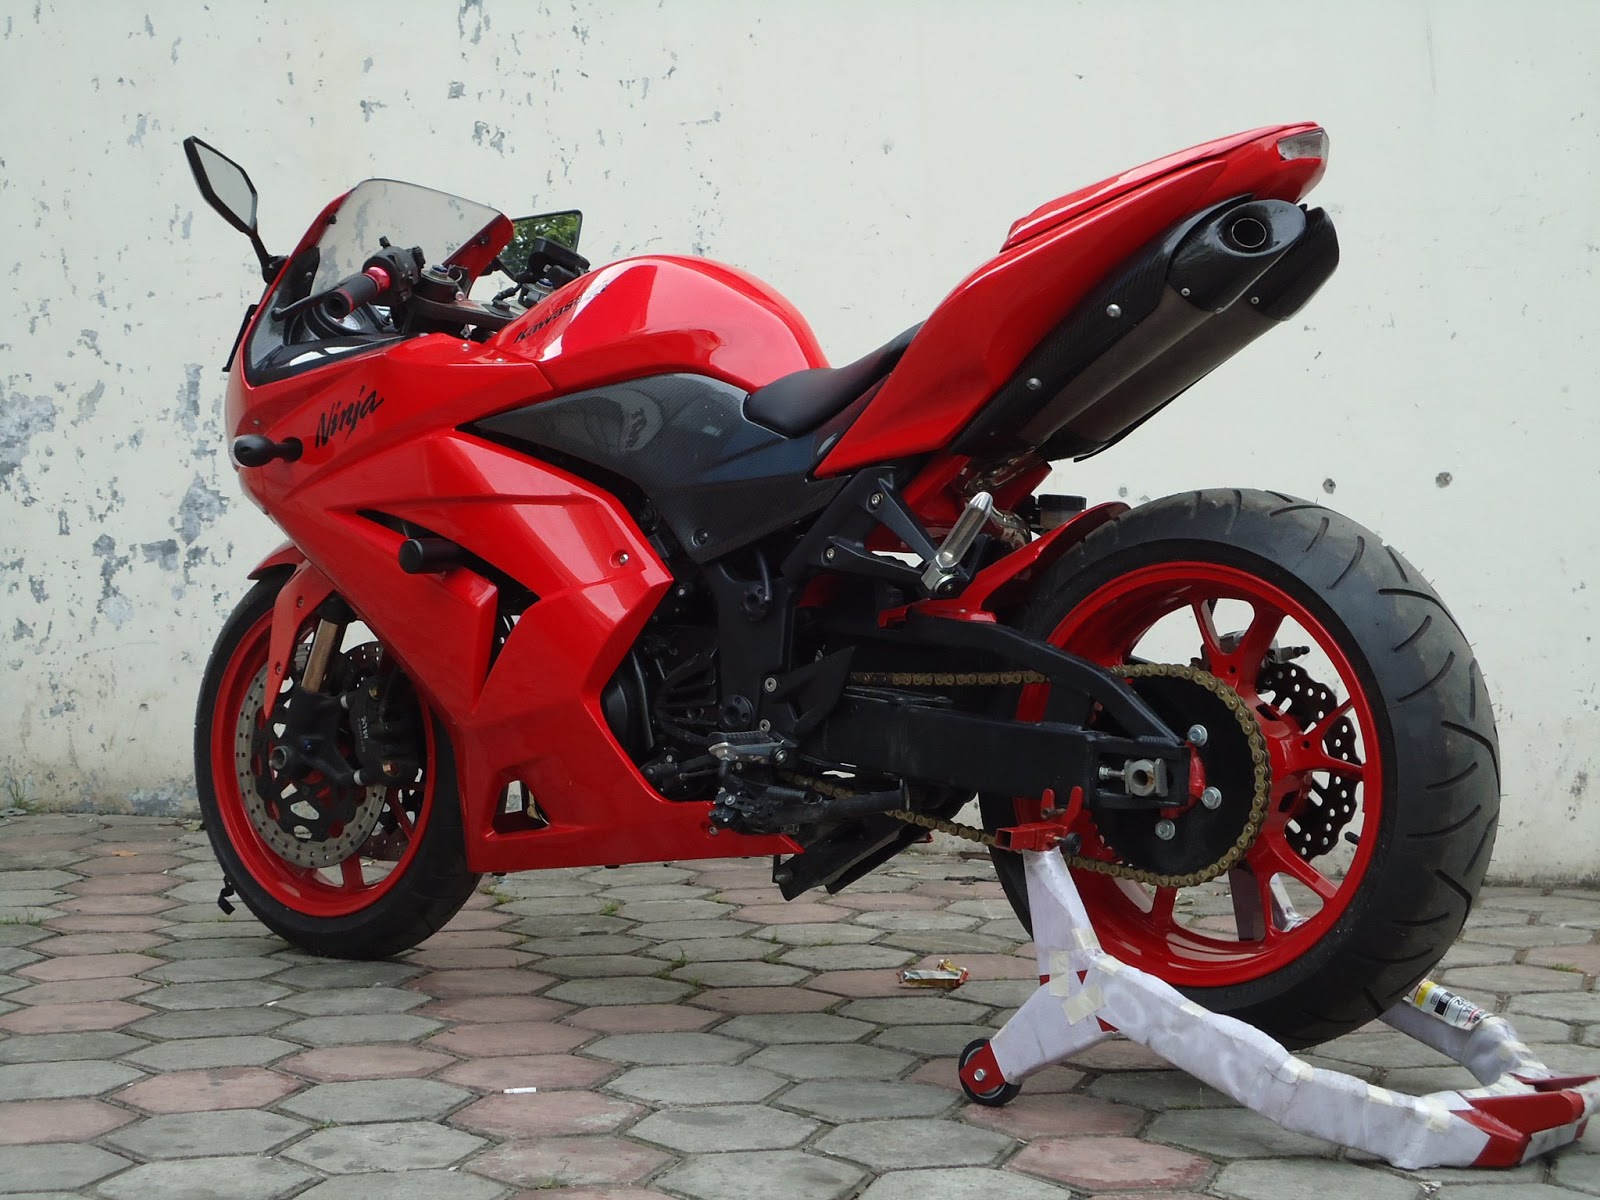 Modifikasi Motor Ninja 250 Merah Images